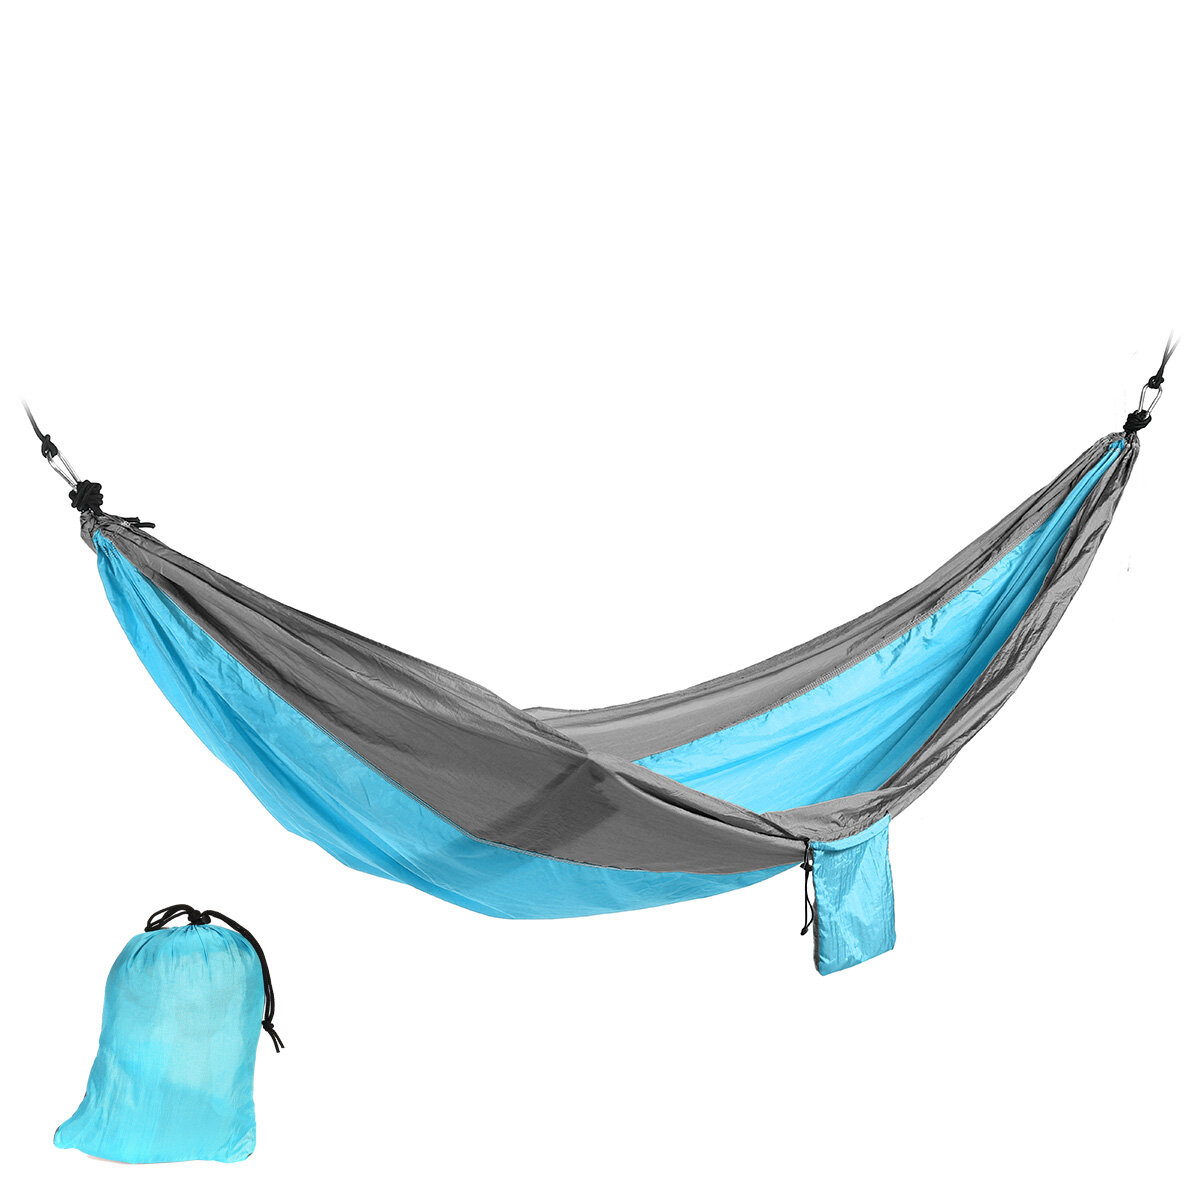 IPRee? 250x140cm Tweepersoonshangmat Parachute Hangmat Hangend Slaapbed Schommelstoel Outdoor Campin